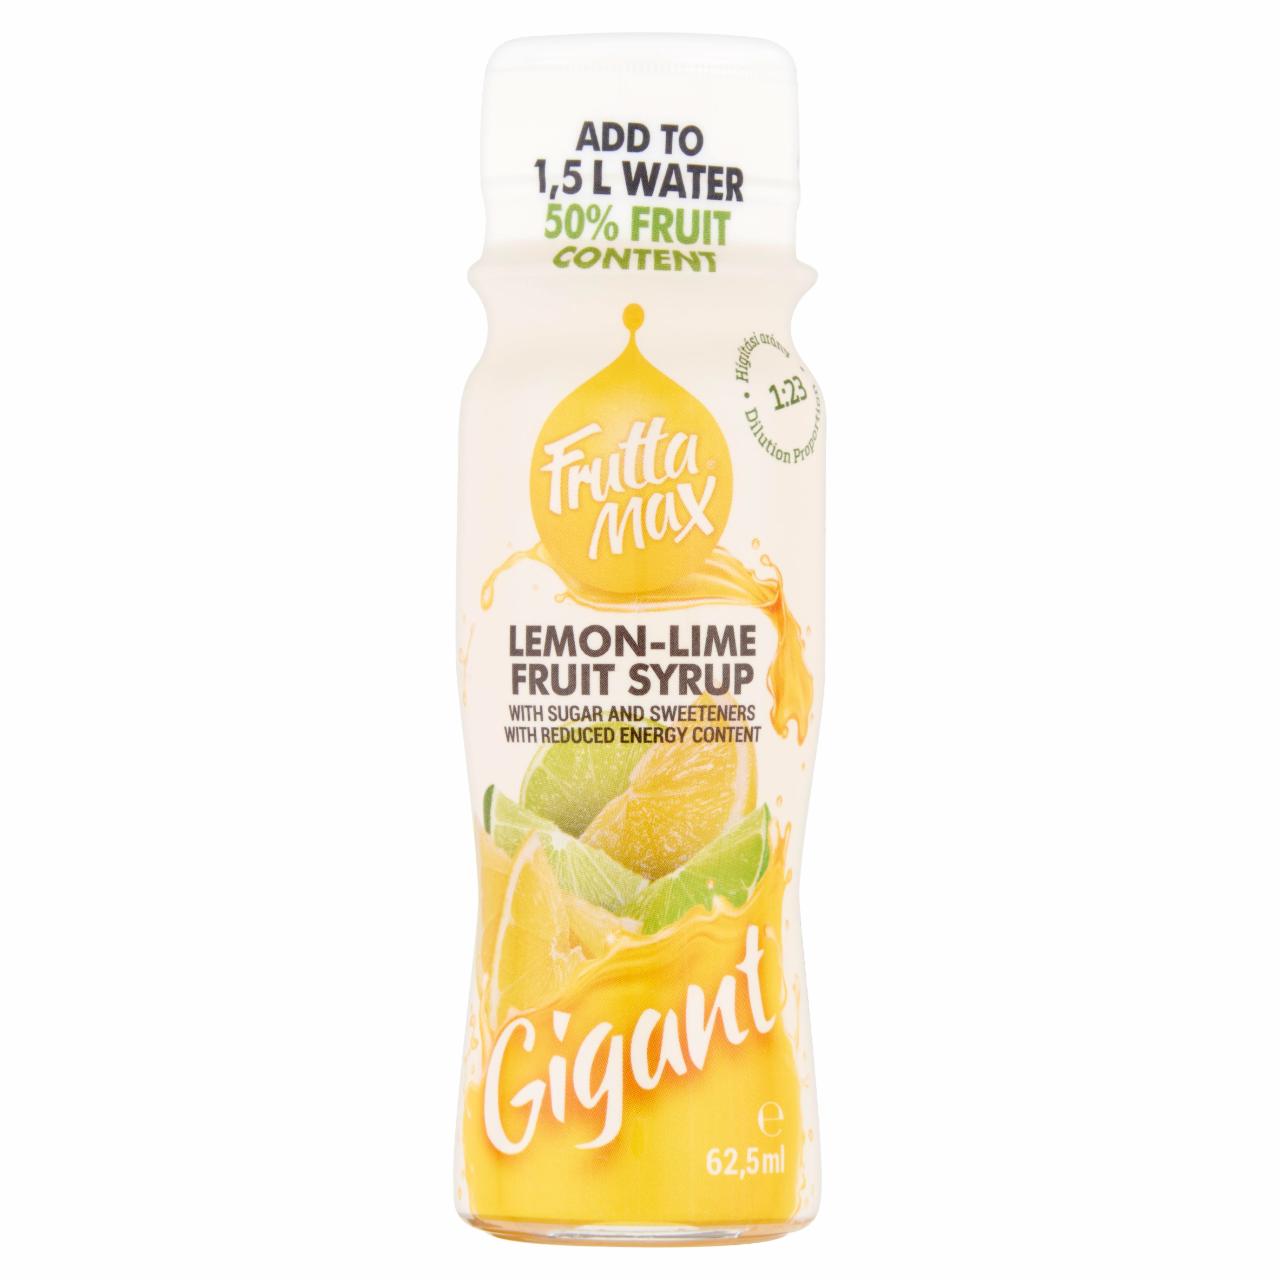 Képek - FruttaMax Gigant citrom-lime gyümölcsszörp csökkentett energiatartalommal 62,5 ml